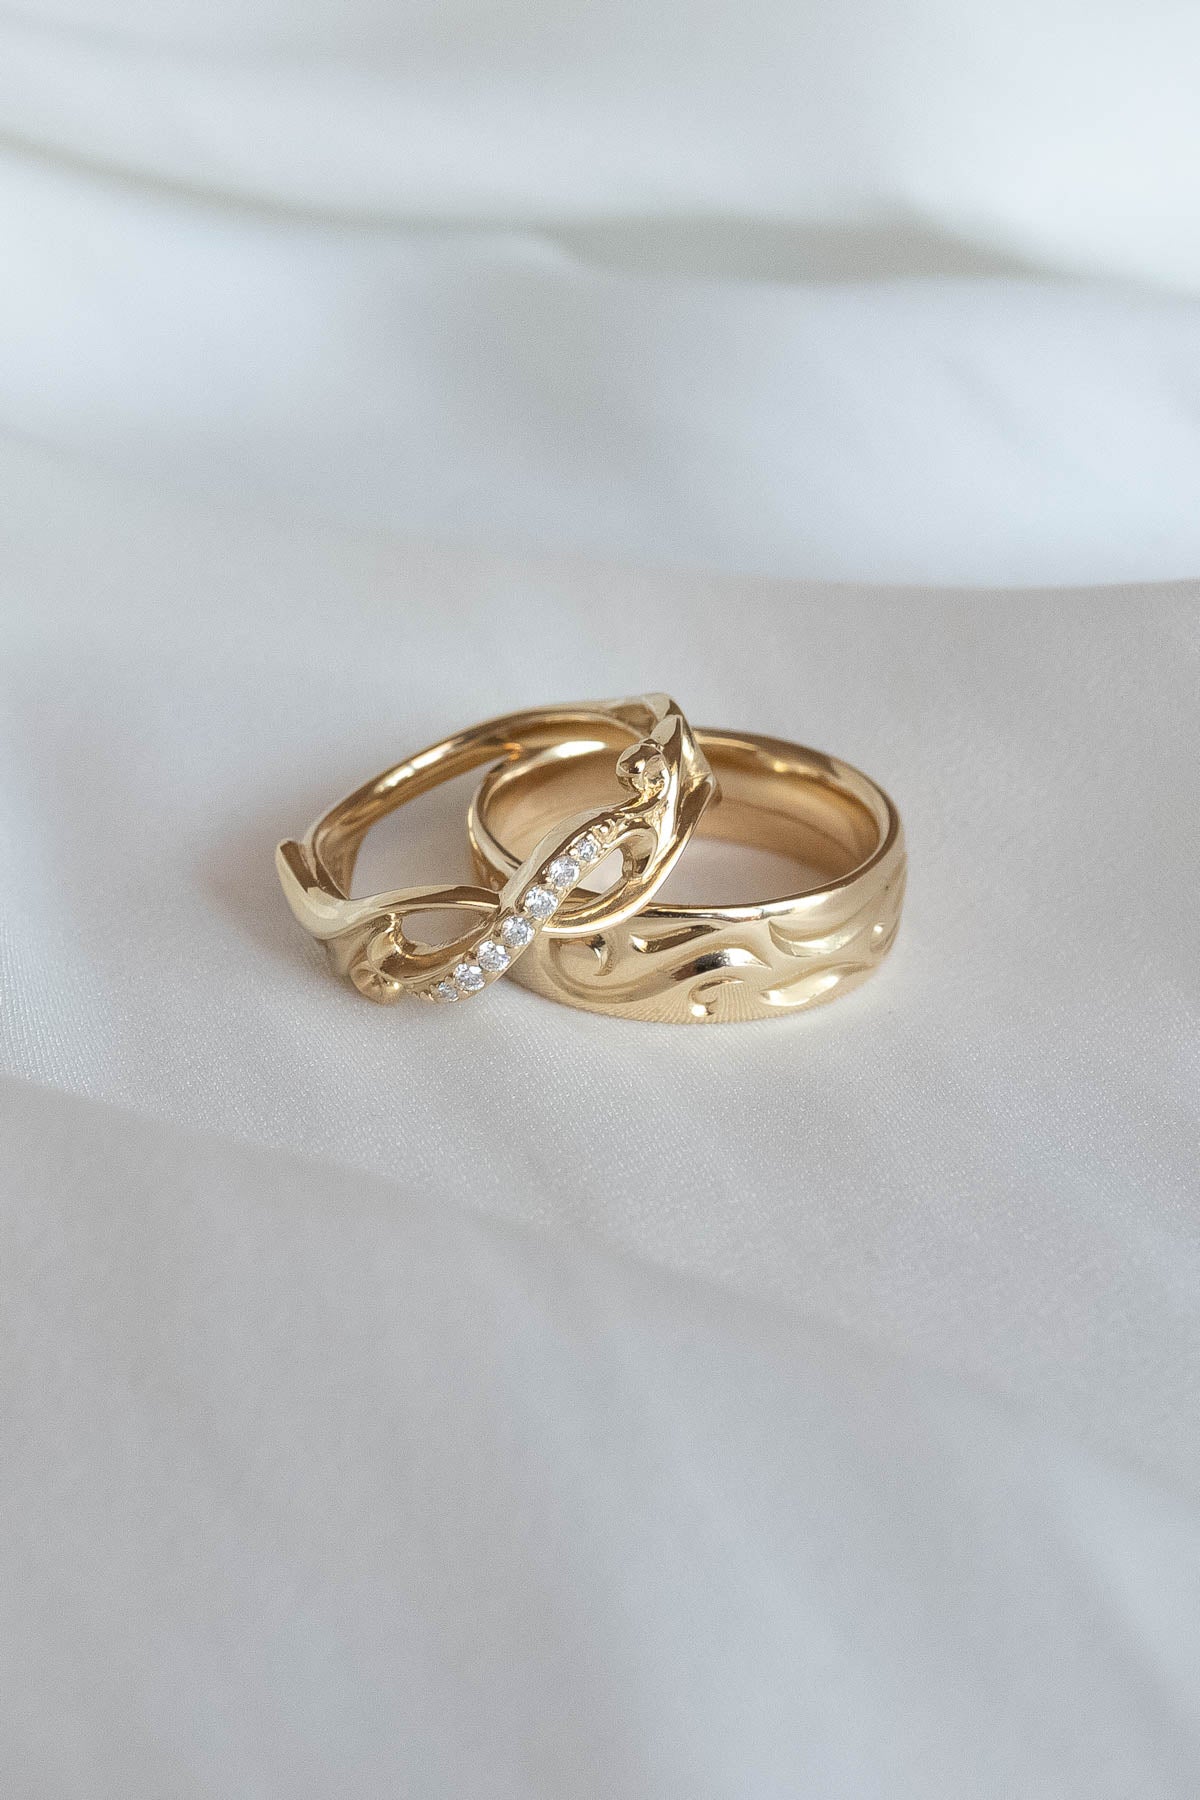 18 karat white and yellow gold wedding rings with matt and shiny finish -  Itai Diamonds